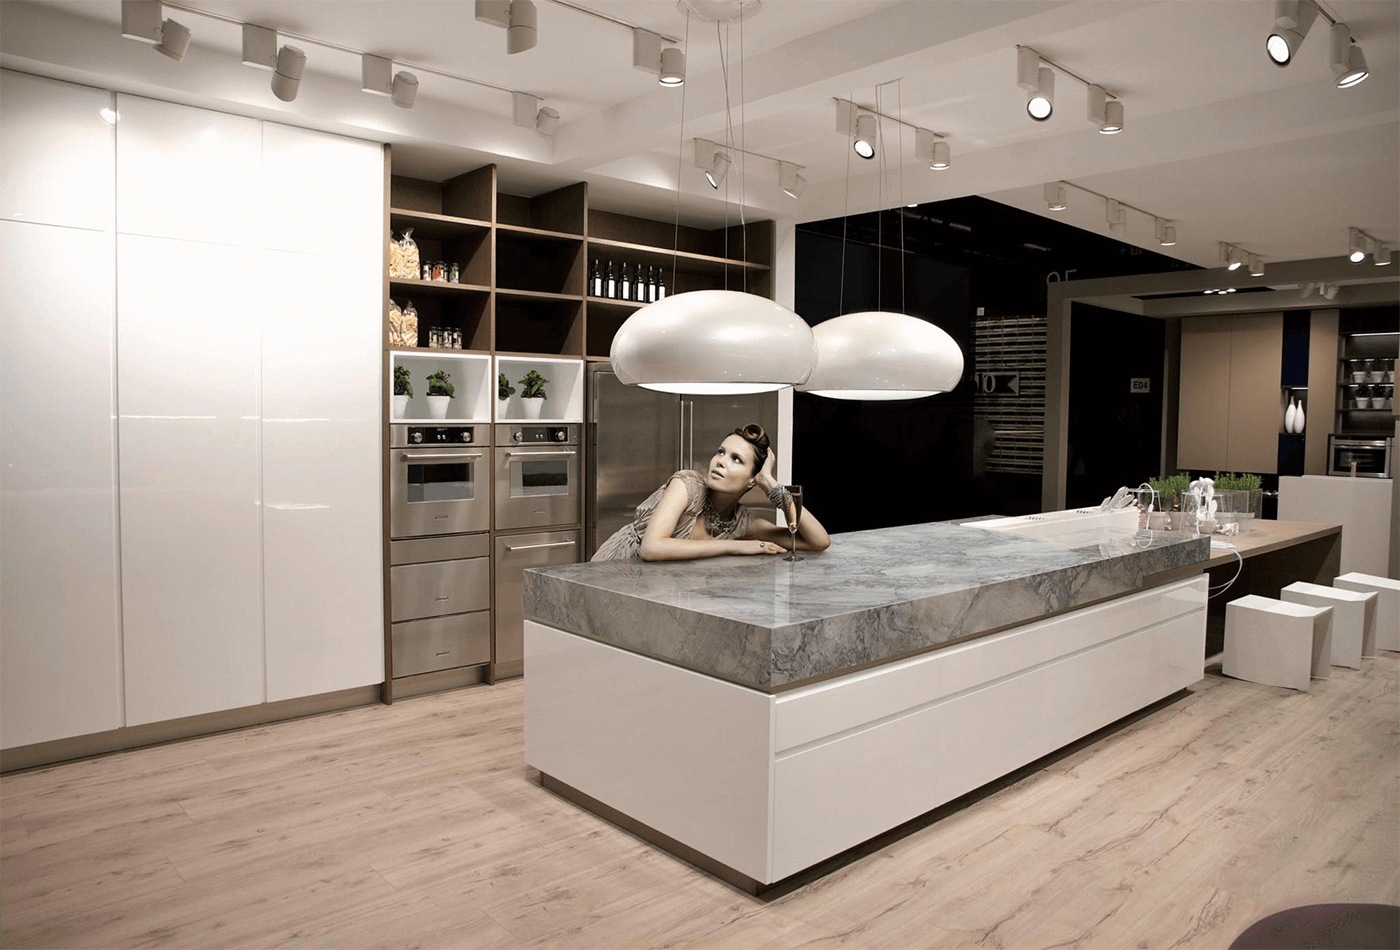 Best Modern Kitchen Design Ideas 